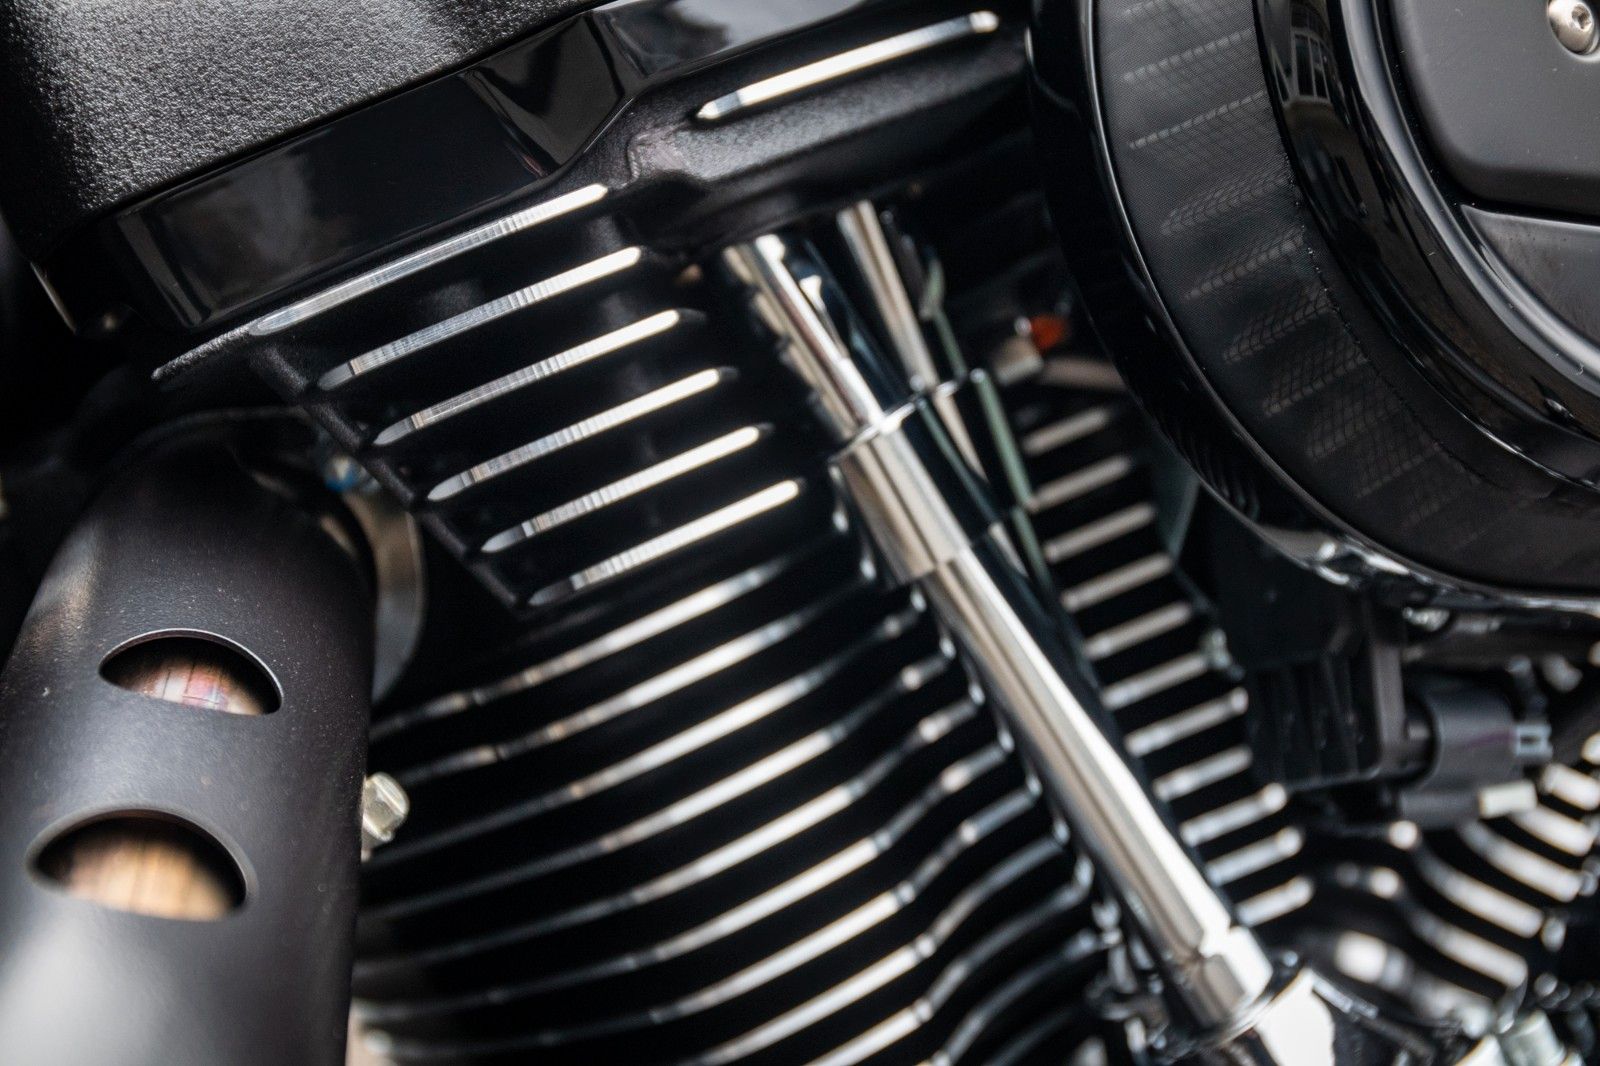 Fahrzeugabbildung Harley-Davidson STREET BOB FXBBS 114ci - MY23 - Kurzfr.verfügbar